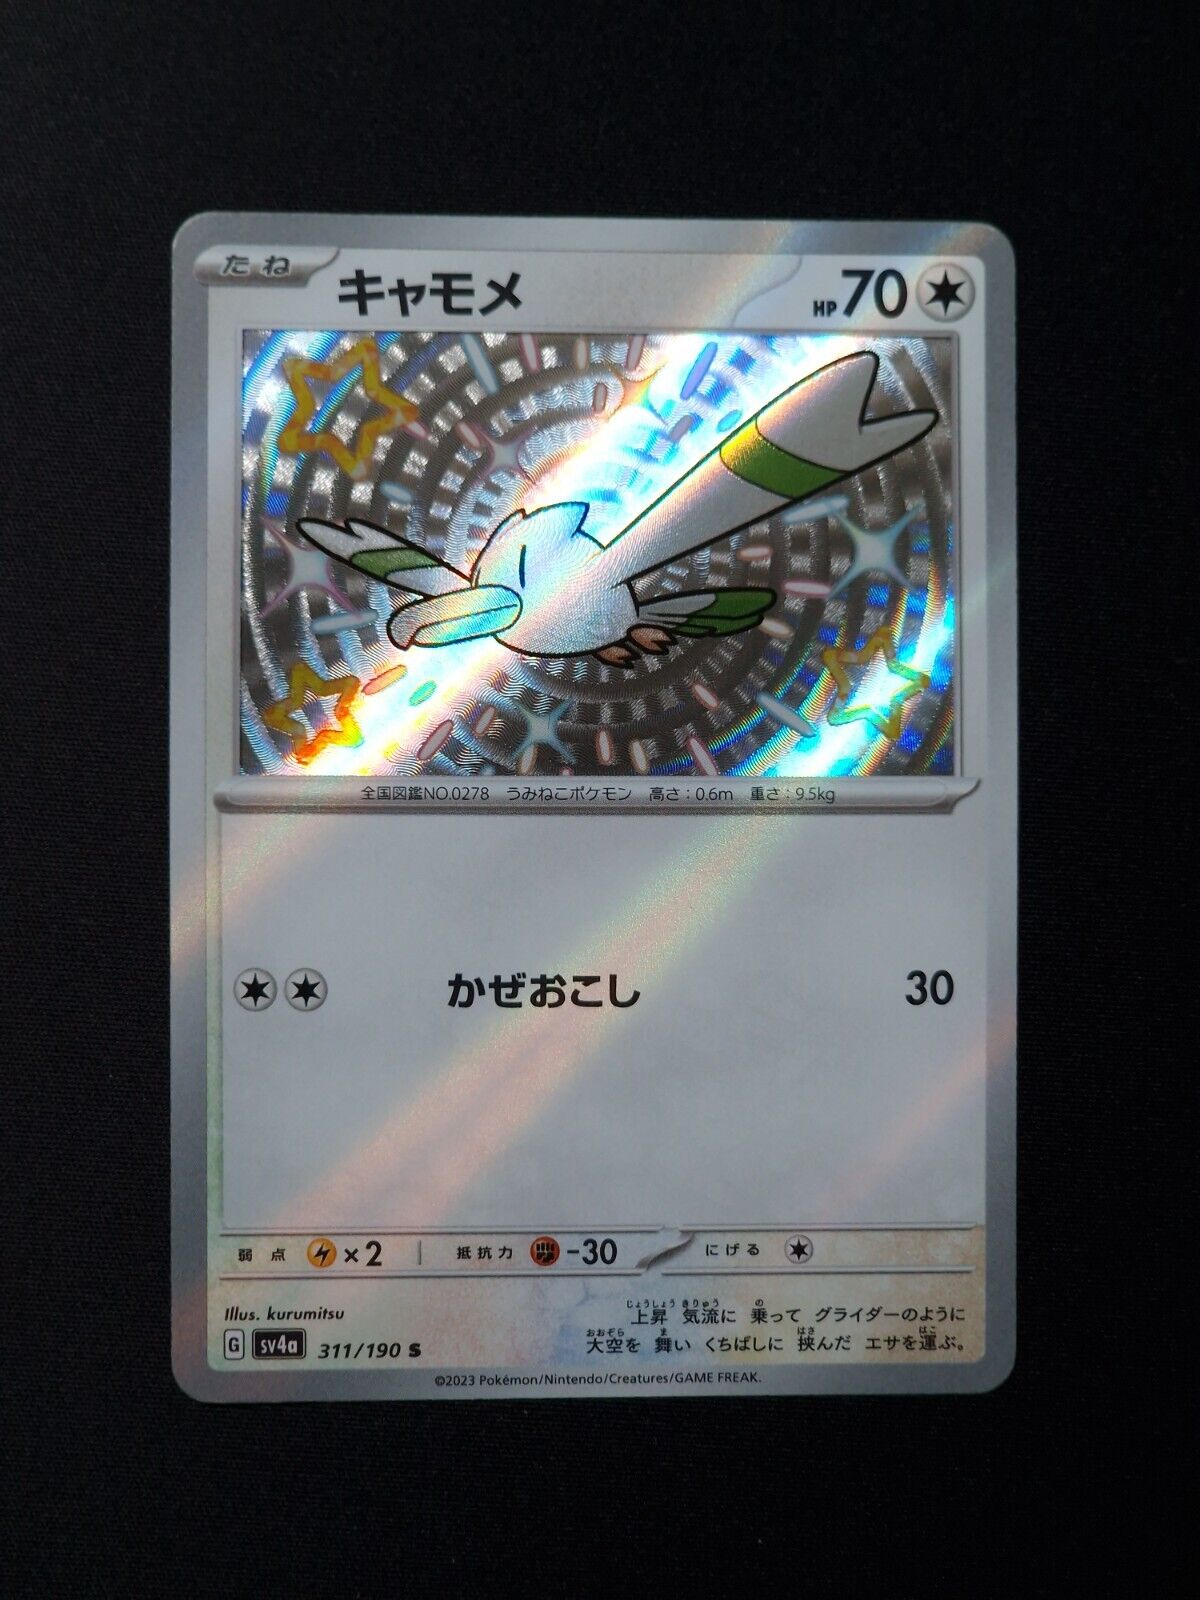 Wingull Japanese Holo Shiny Pokemon TCG Card Shiny Treasures 311/190 NEAR MINT